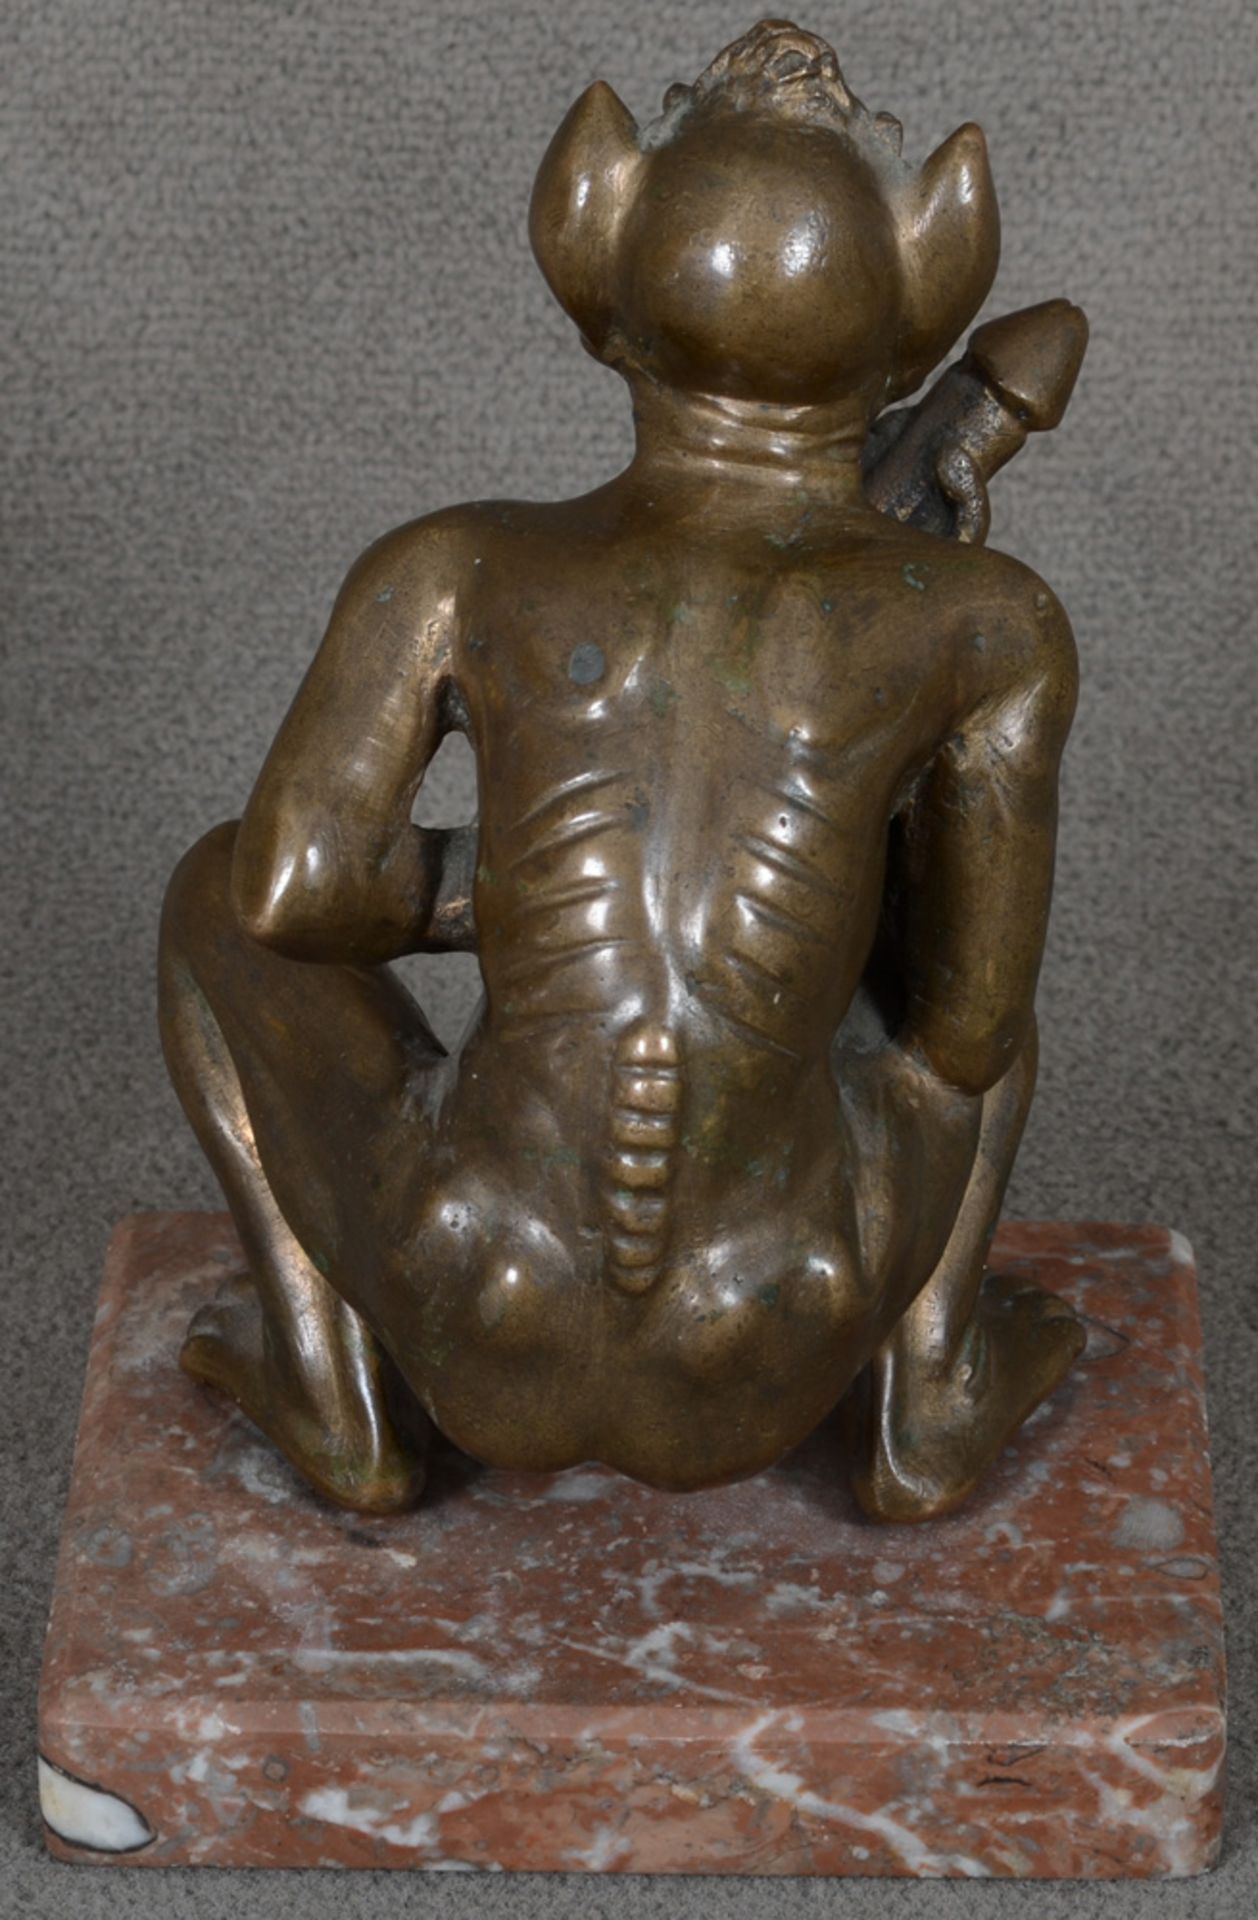 Erotika: Hockender Teufel mit langem Phallus. Deutsch 20. Jh. Bronze, auf Marmorsockel, H=17 cm. - Image 2 of 2